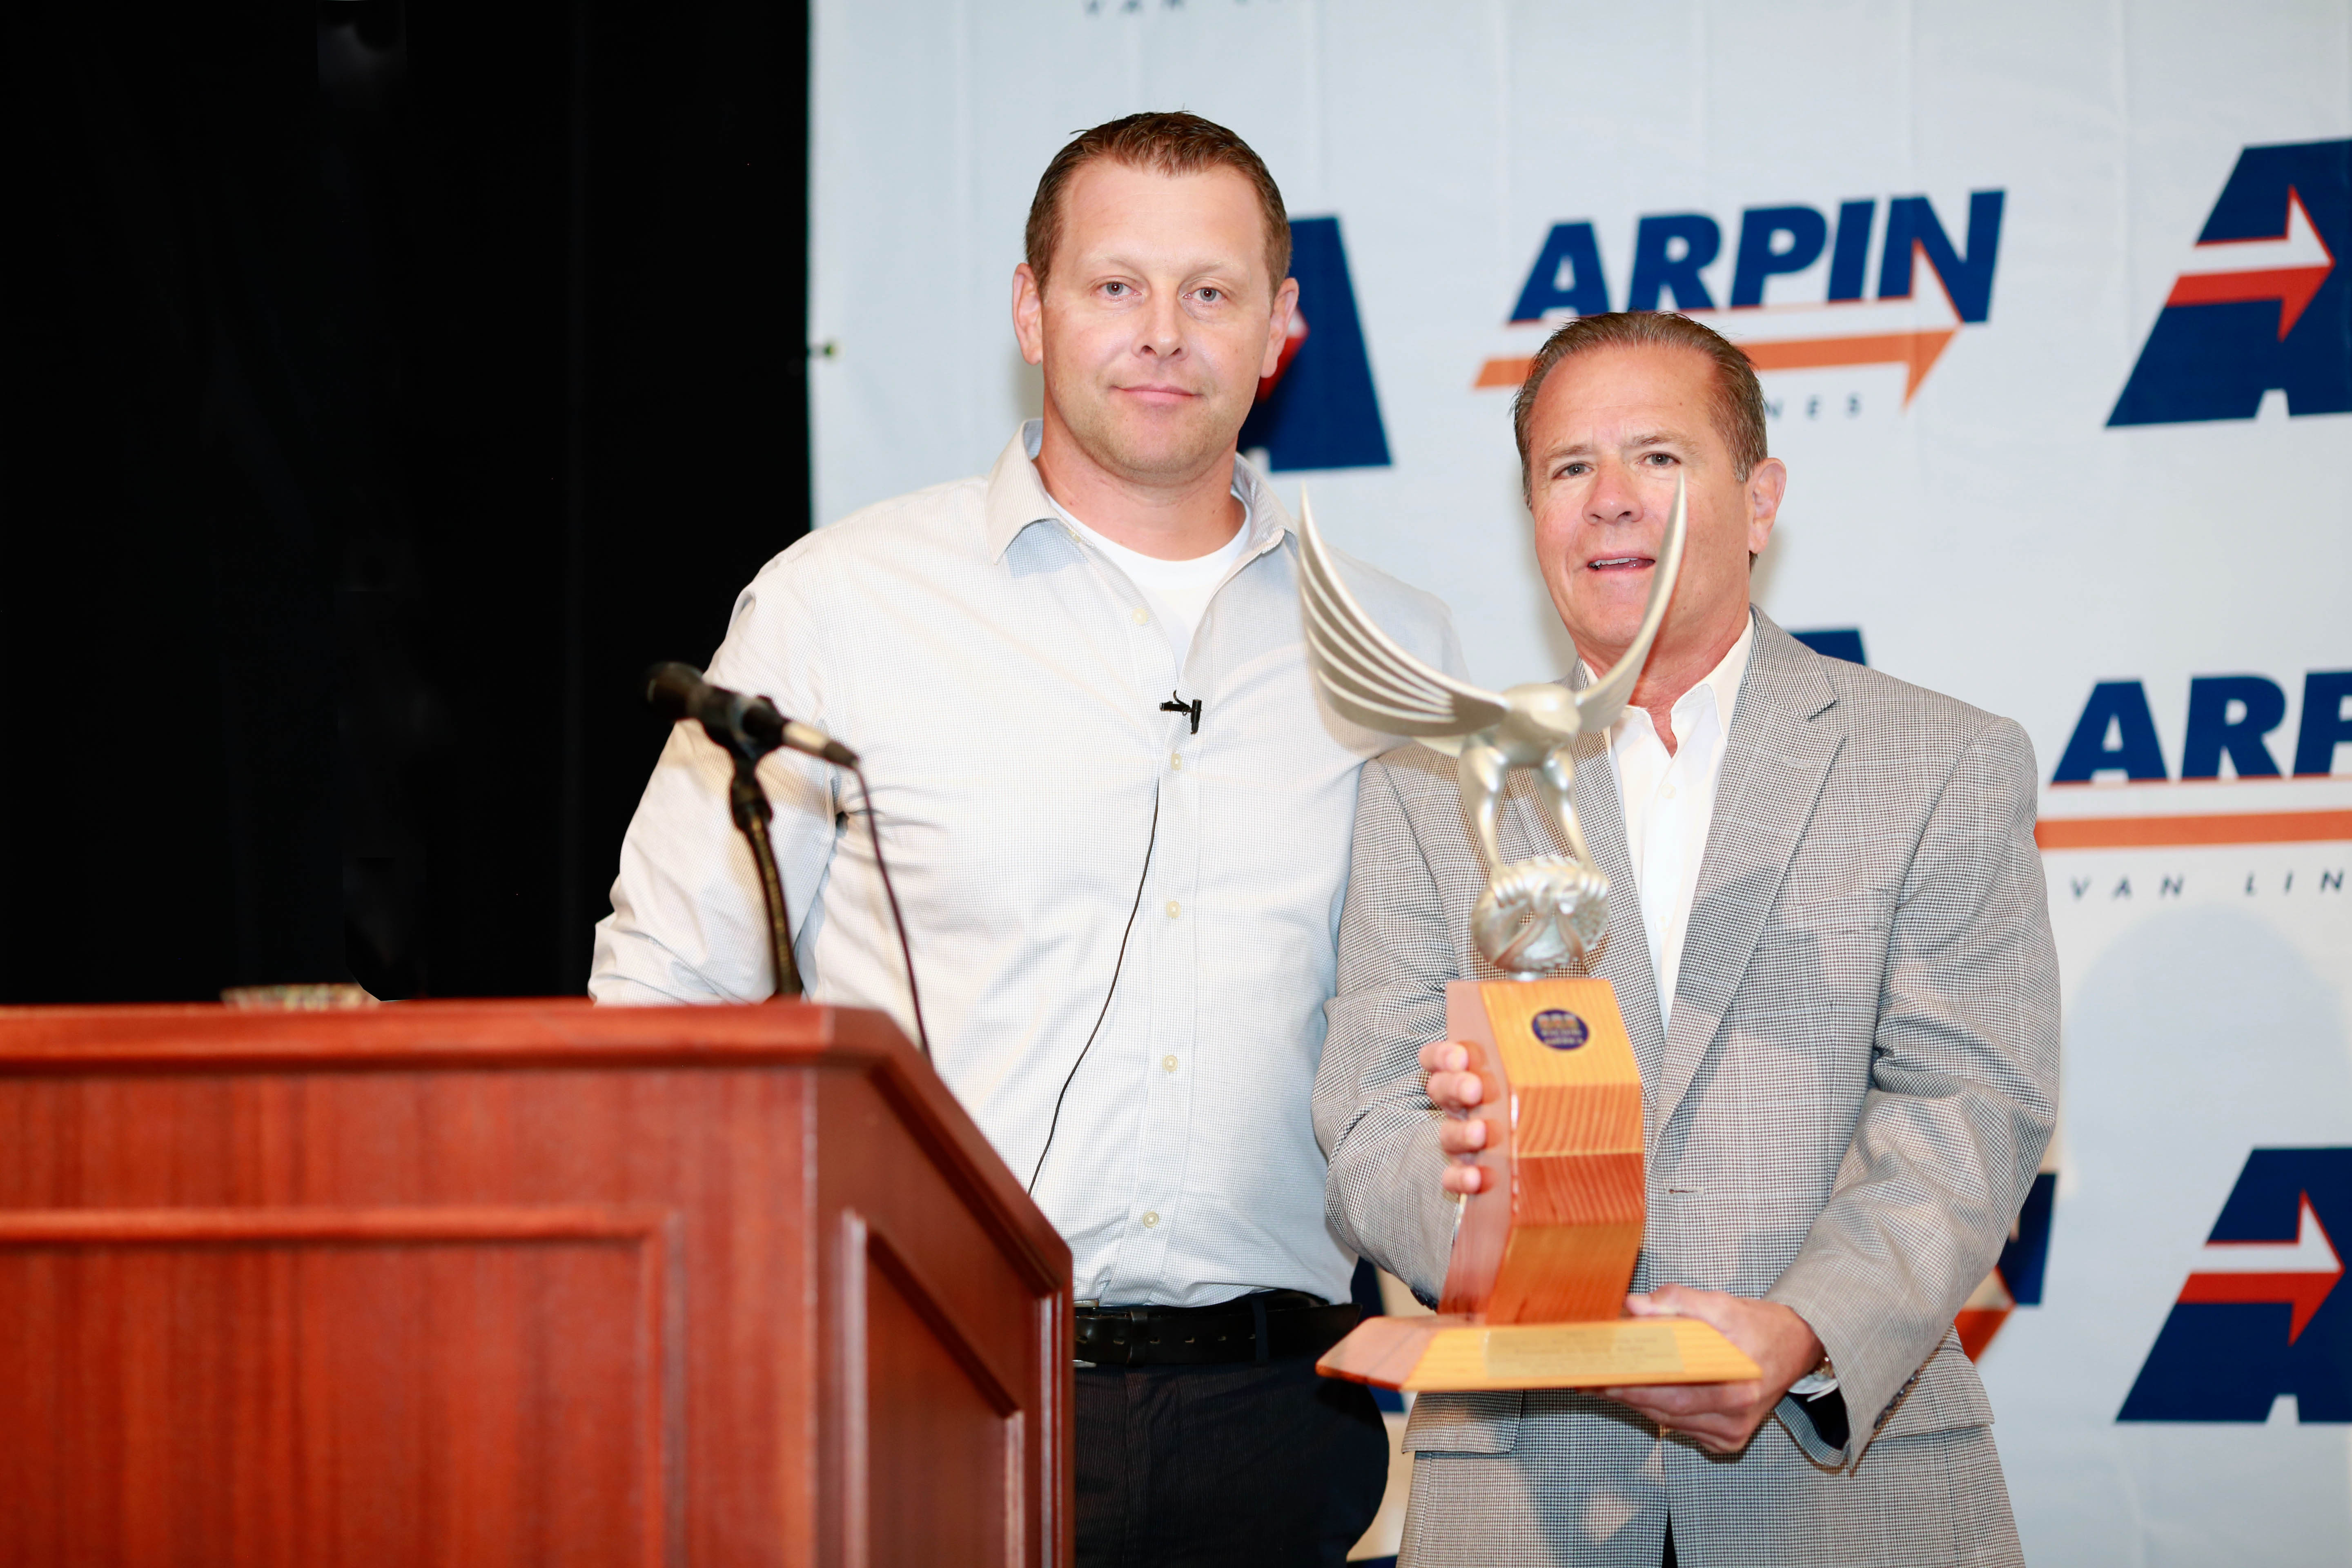 David Arpin receiving award form Rob Worcester